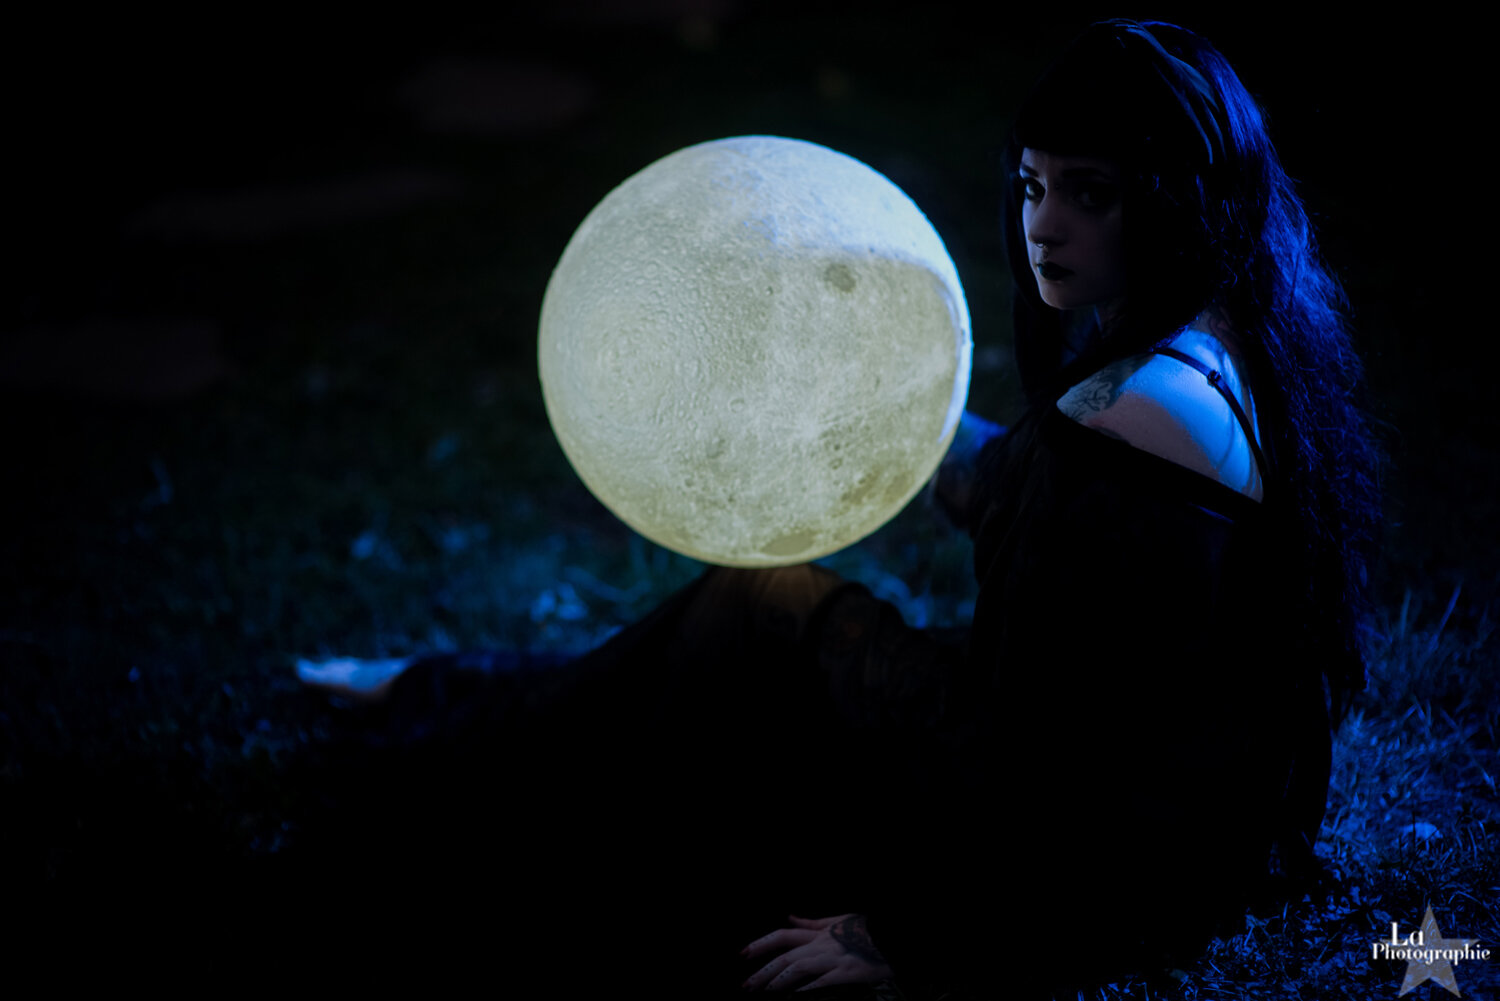 Moon Lamp Portraits by La Photographie Nashville 10.jpg